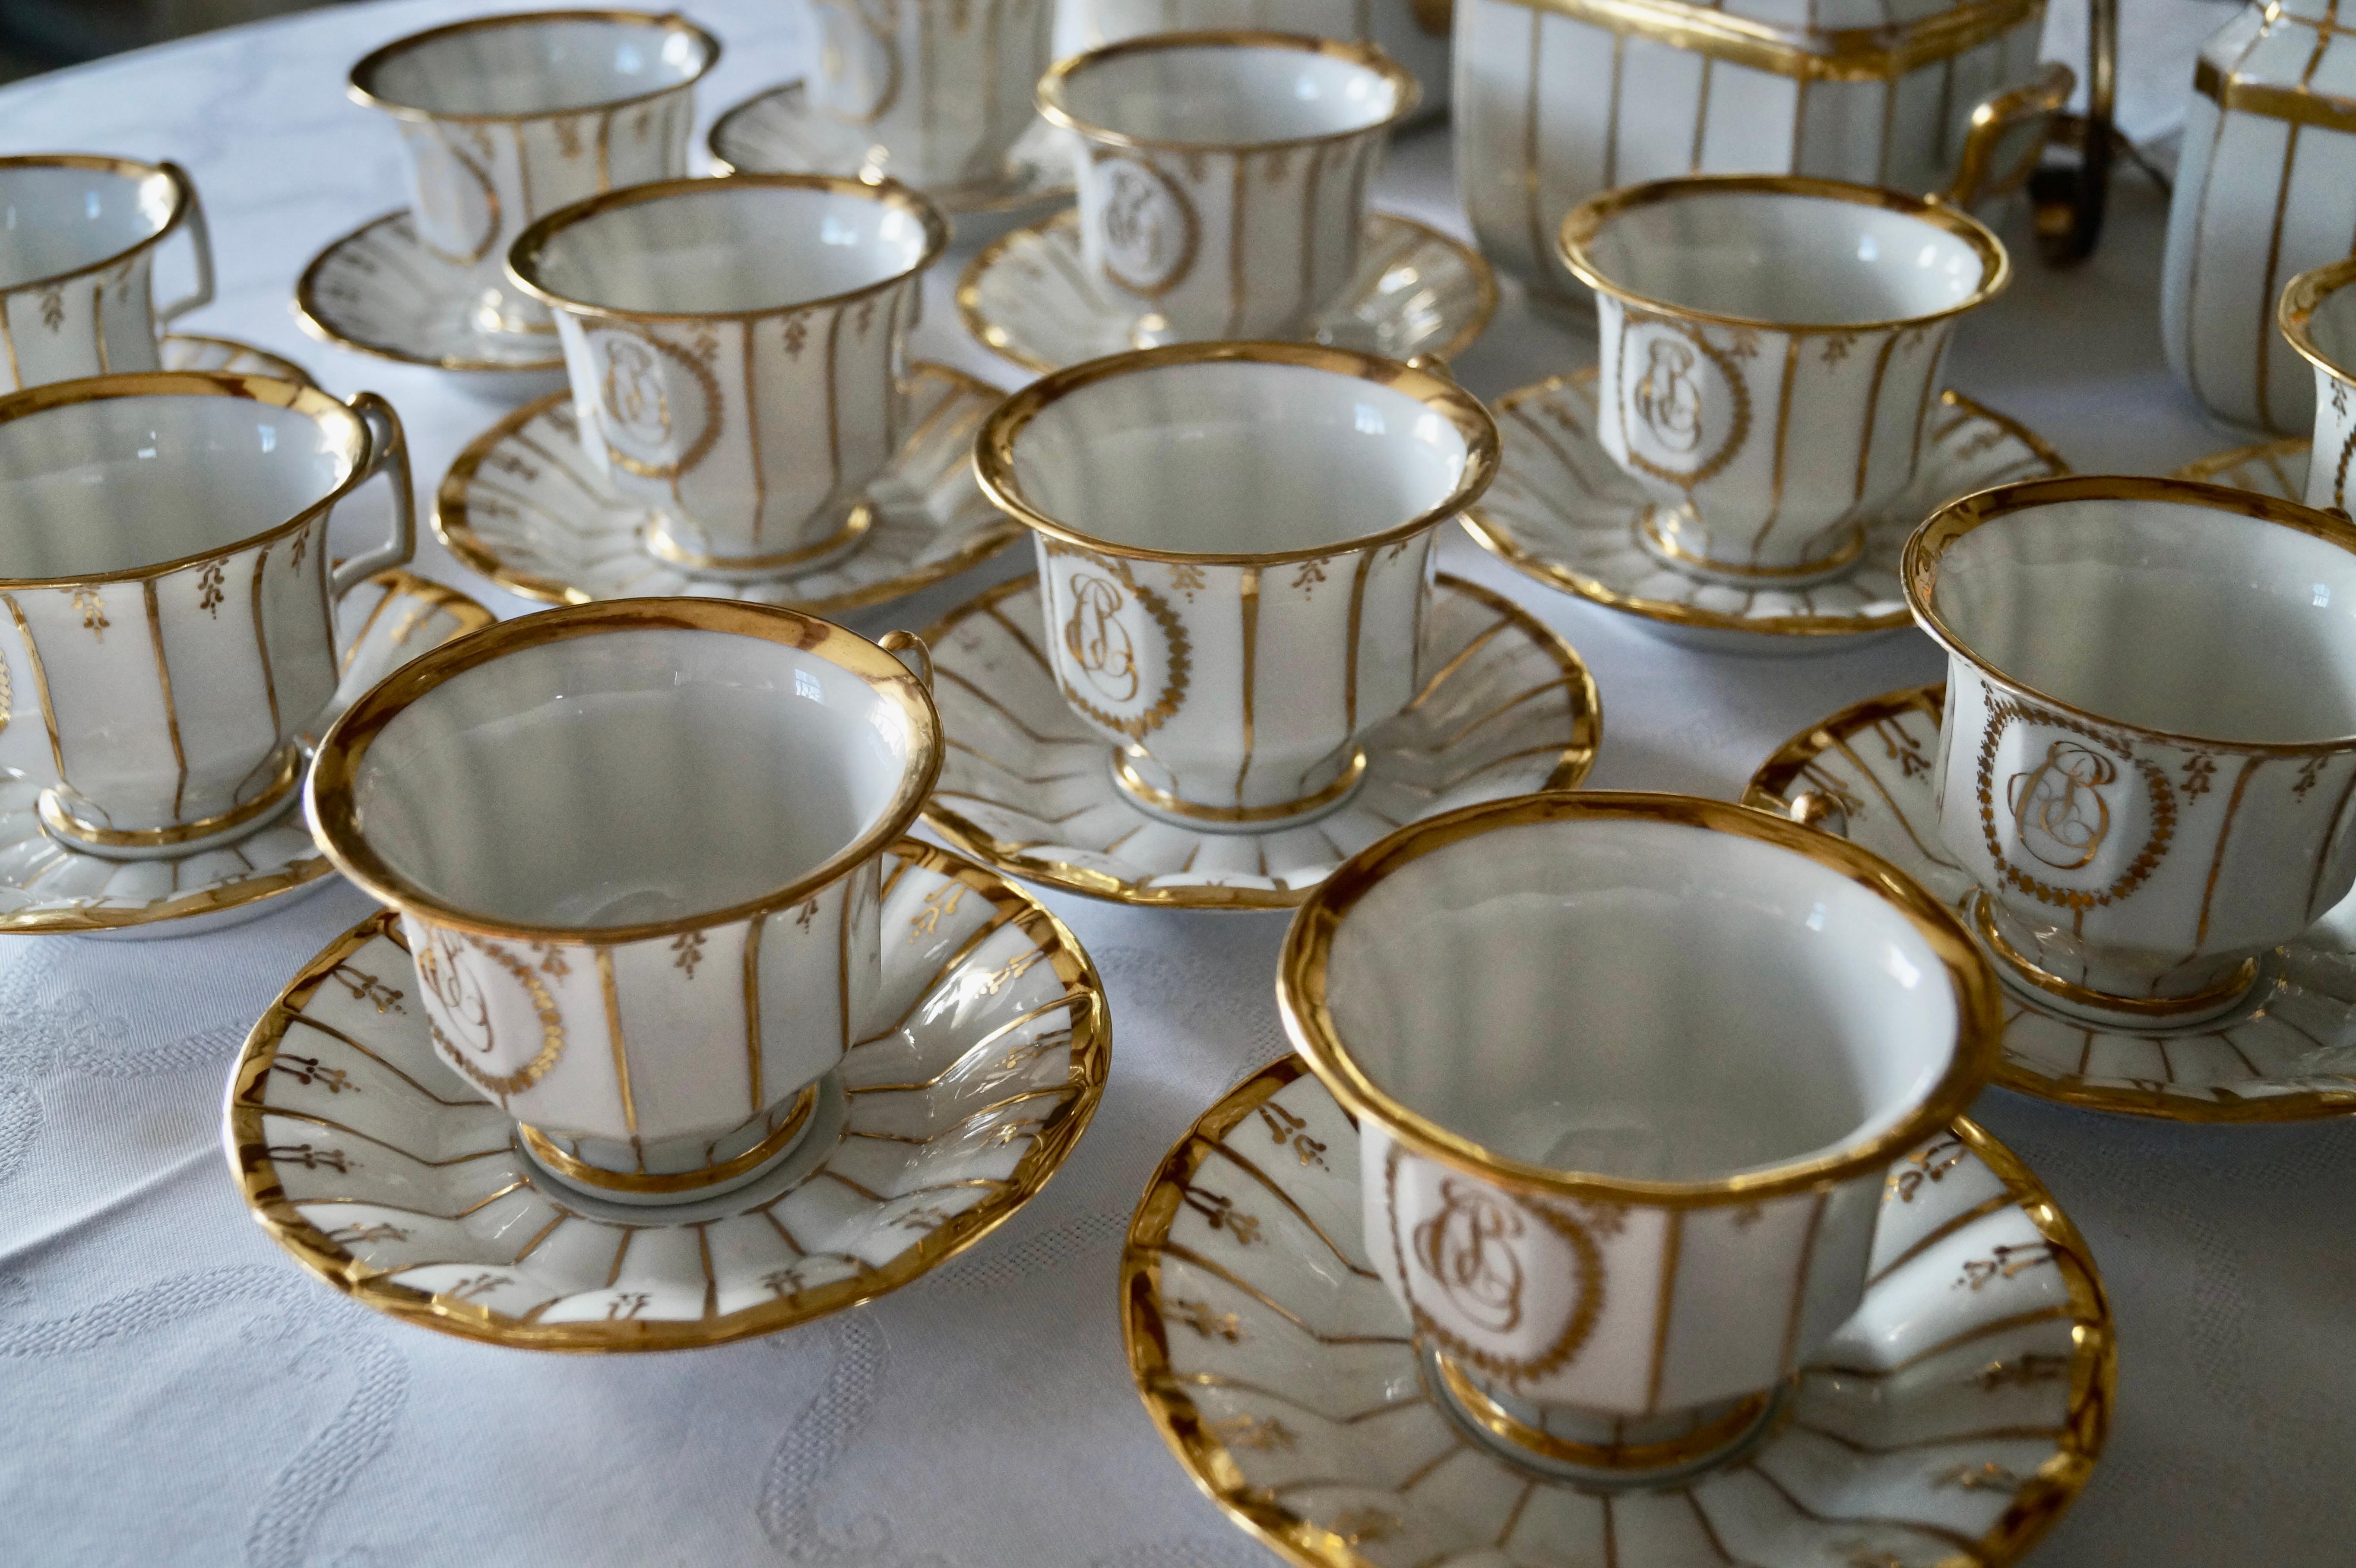 Wunderschönes antikes Teeservice aus altem Pariser Porzellan (Porcelaine de Paris) aus der Louis-Philipp-Periode 1830-1850.

Die schlichte Form und der Stil des Geschirrs sind charakteristisch für diese Zeit. 

Wunderschönes elegantes Handdekor mit